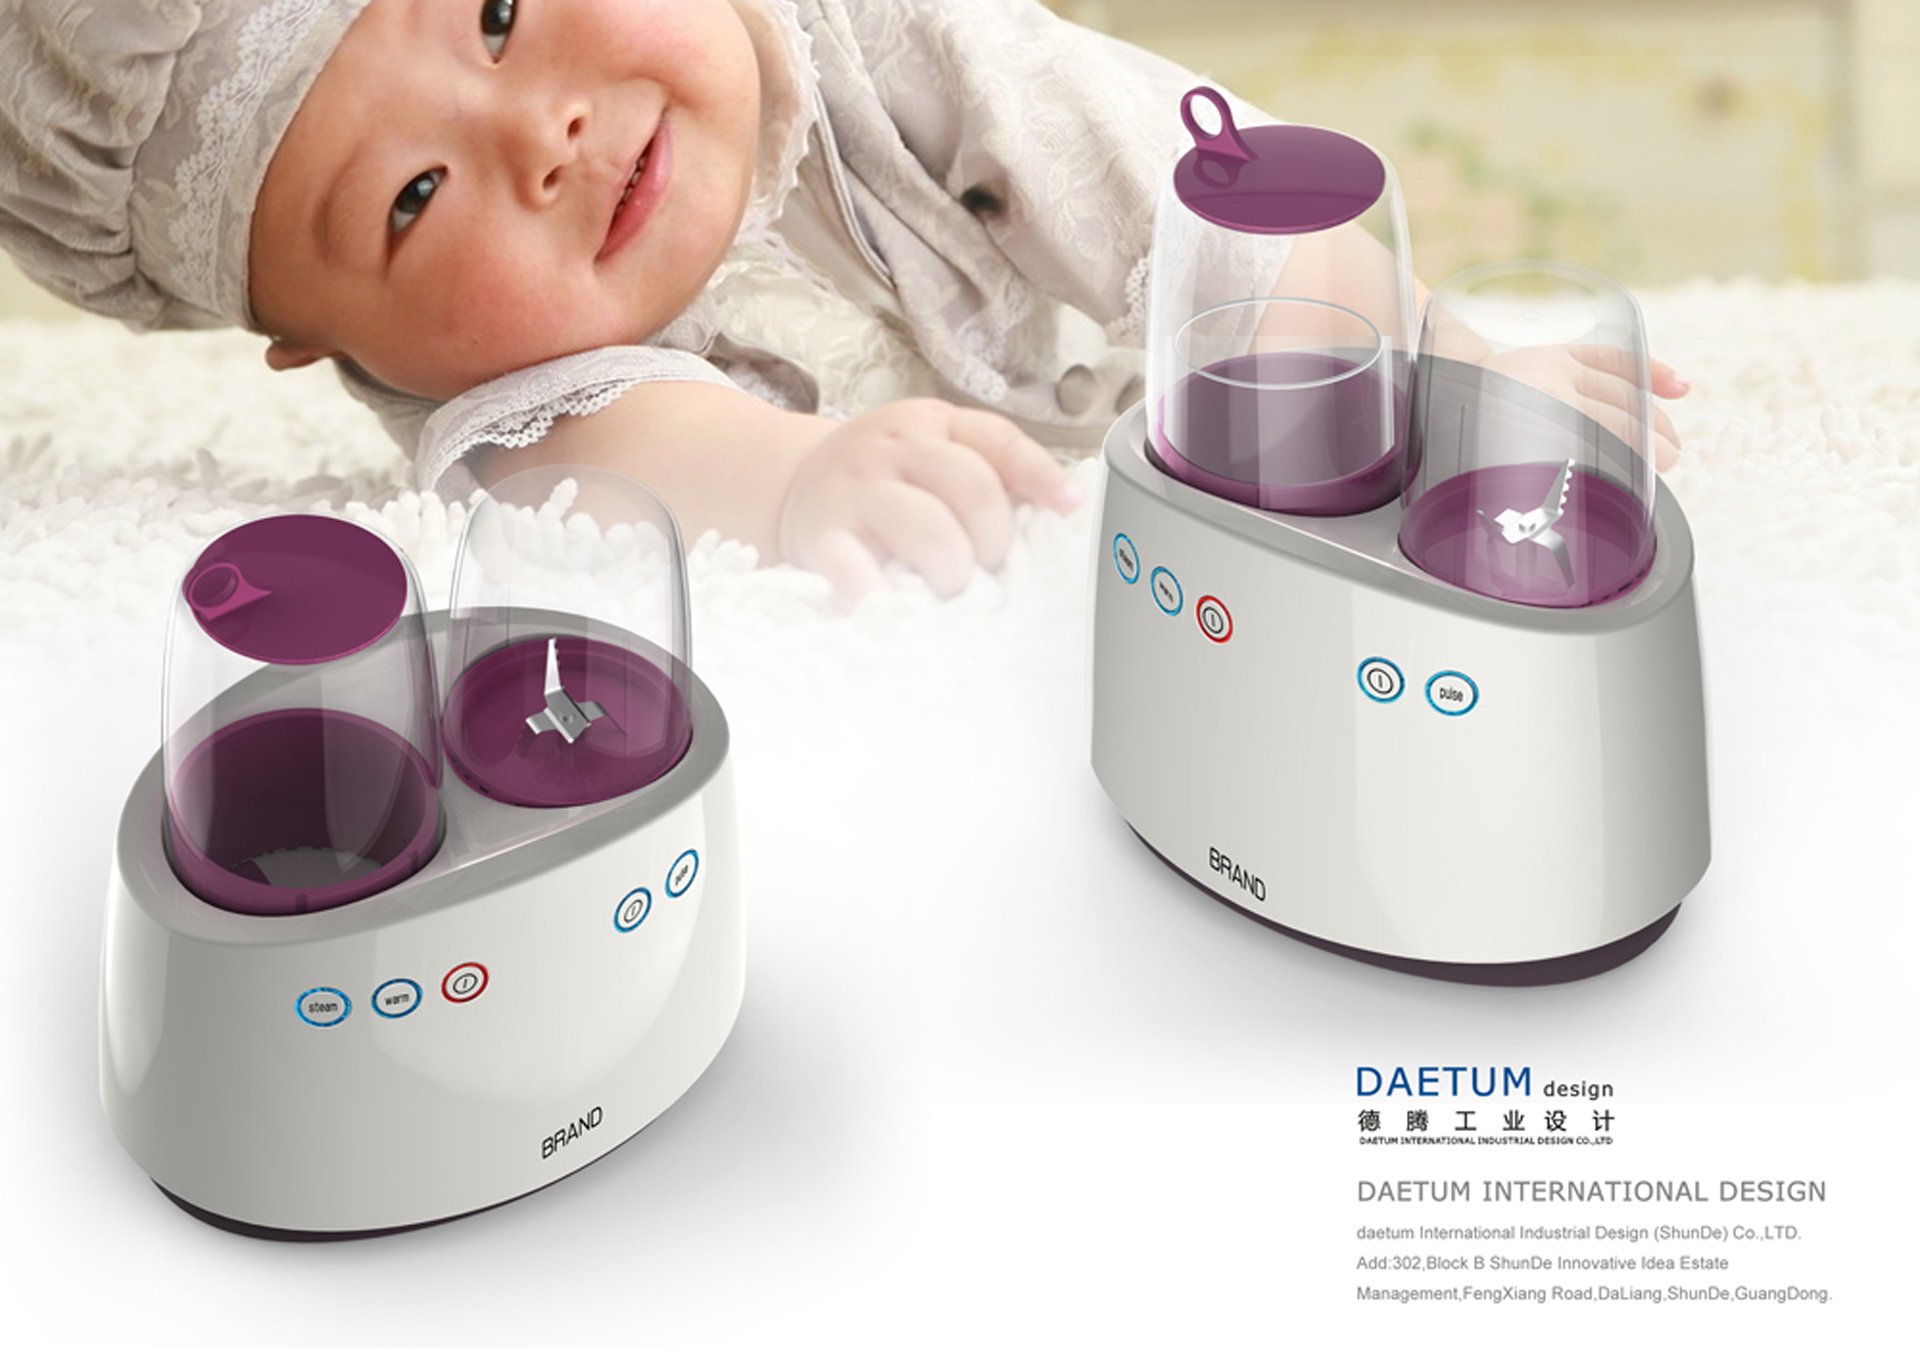 婴儿食品处理器外观设计,婴儿食品处理器产品设计,婴儿食品处理器设计